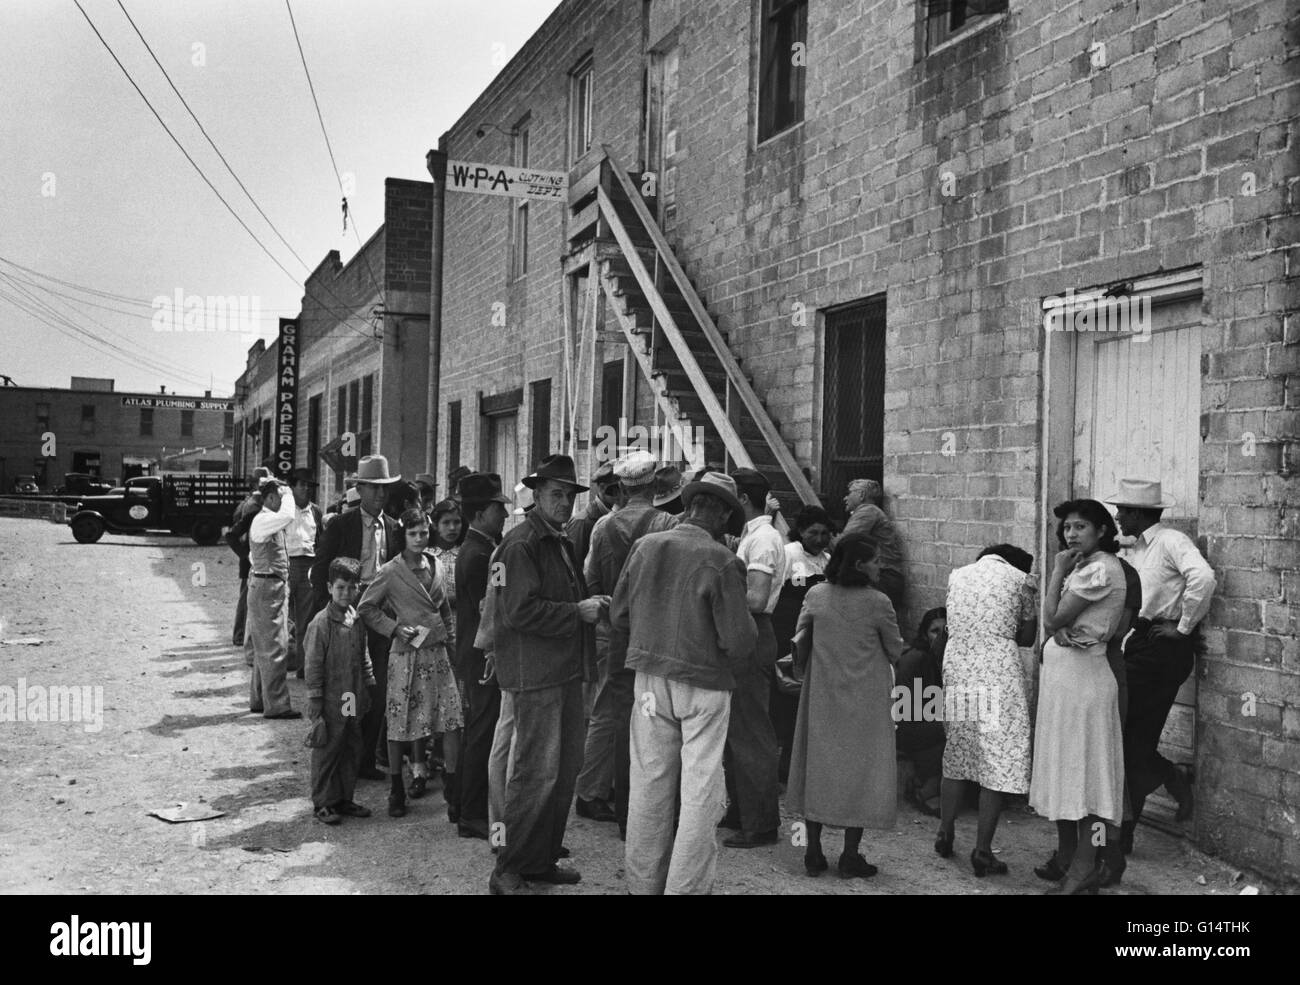 Una linea di persone in attesa per WPA abbigliamento, San Antonio, Texas. Prese nel 1939 da Russell Lee per la Farm Security Administration (FSA). Foto Stock